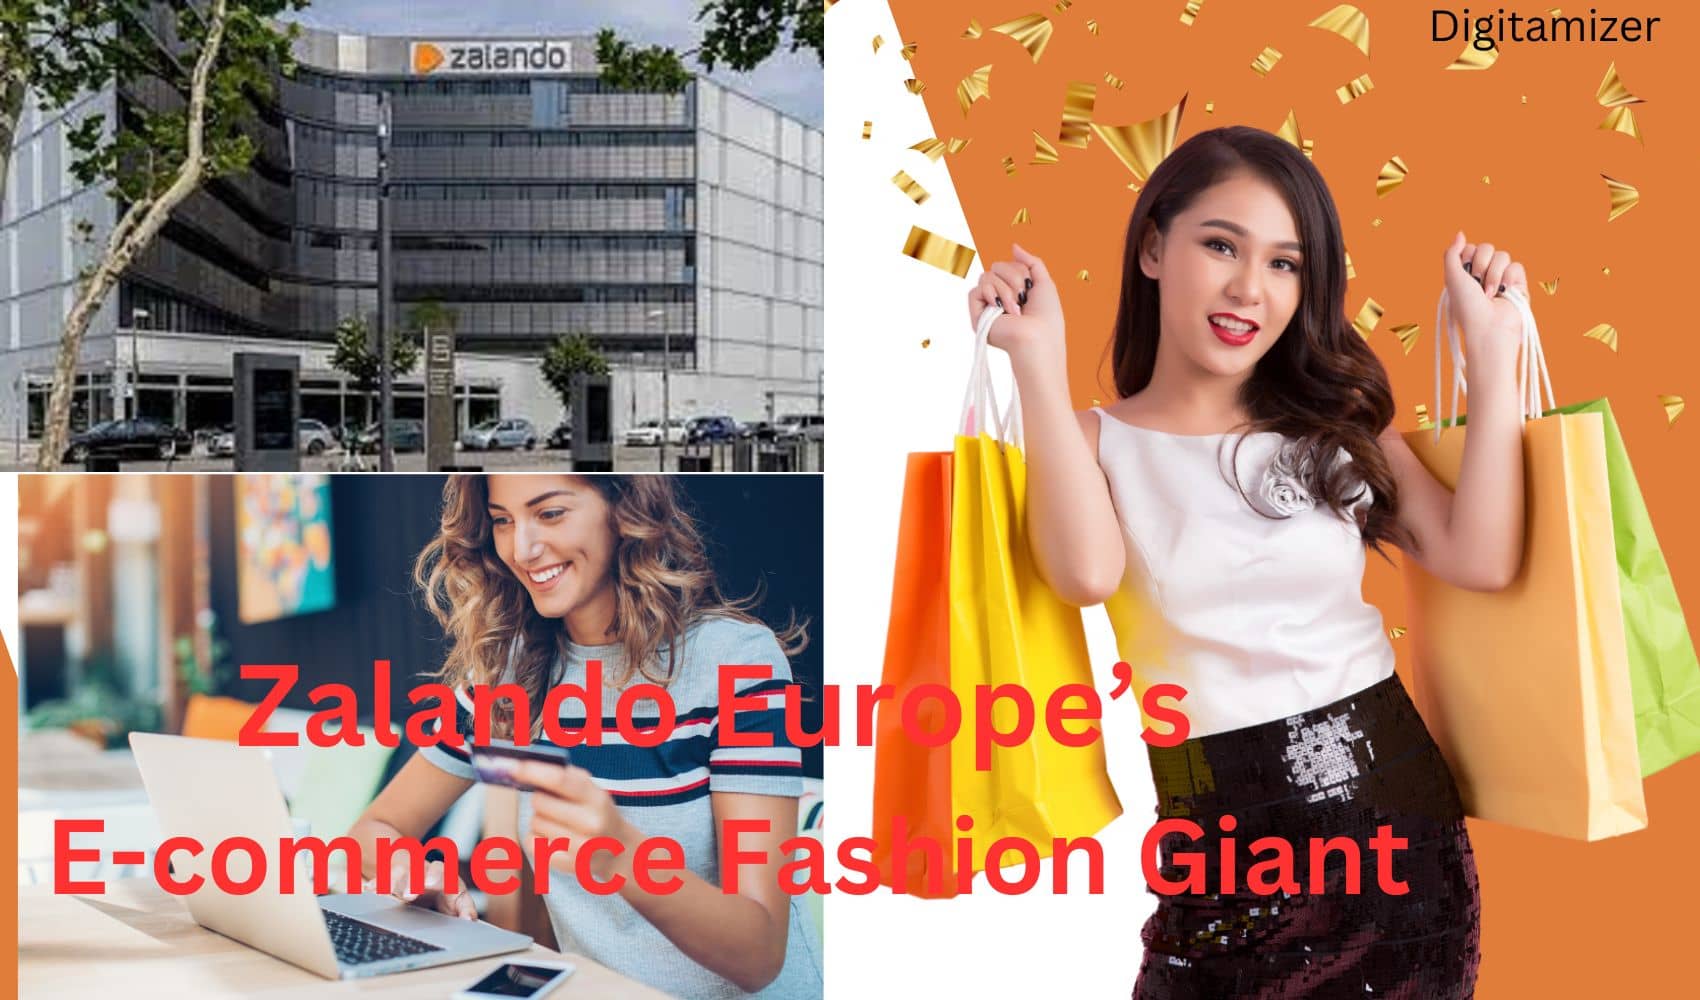 Zalando Europe’s E-commerce Fashion Giant